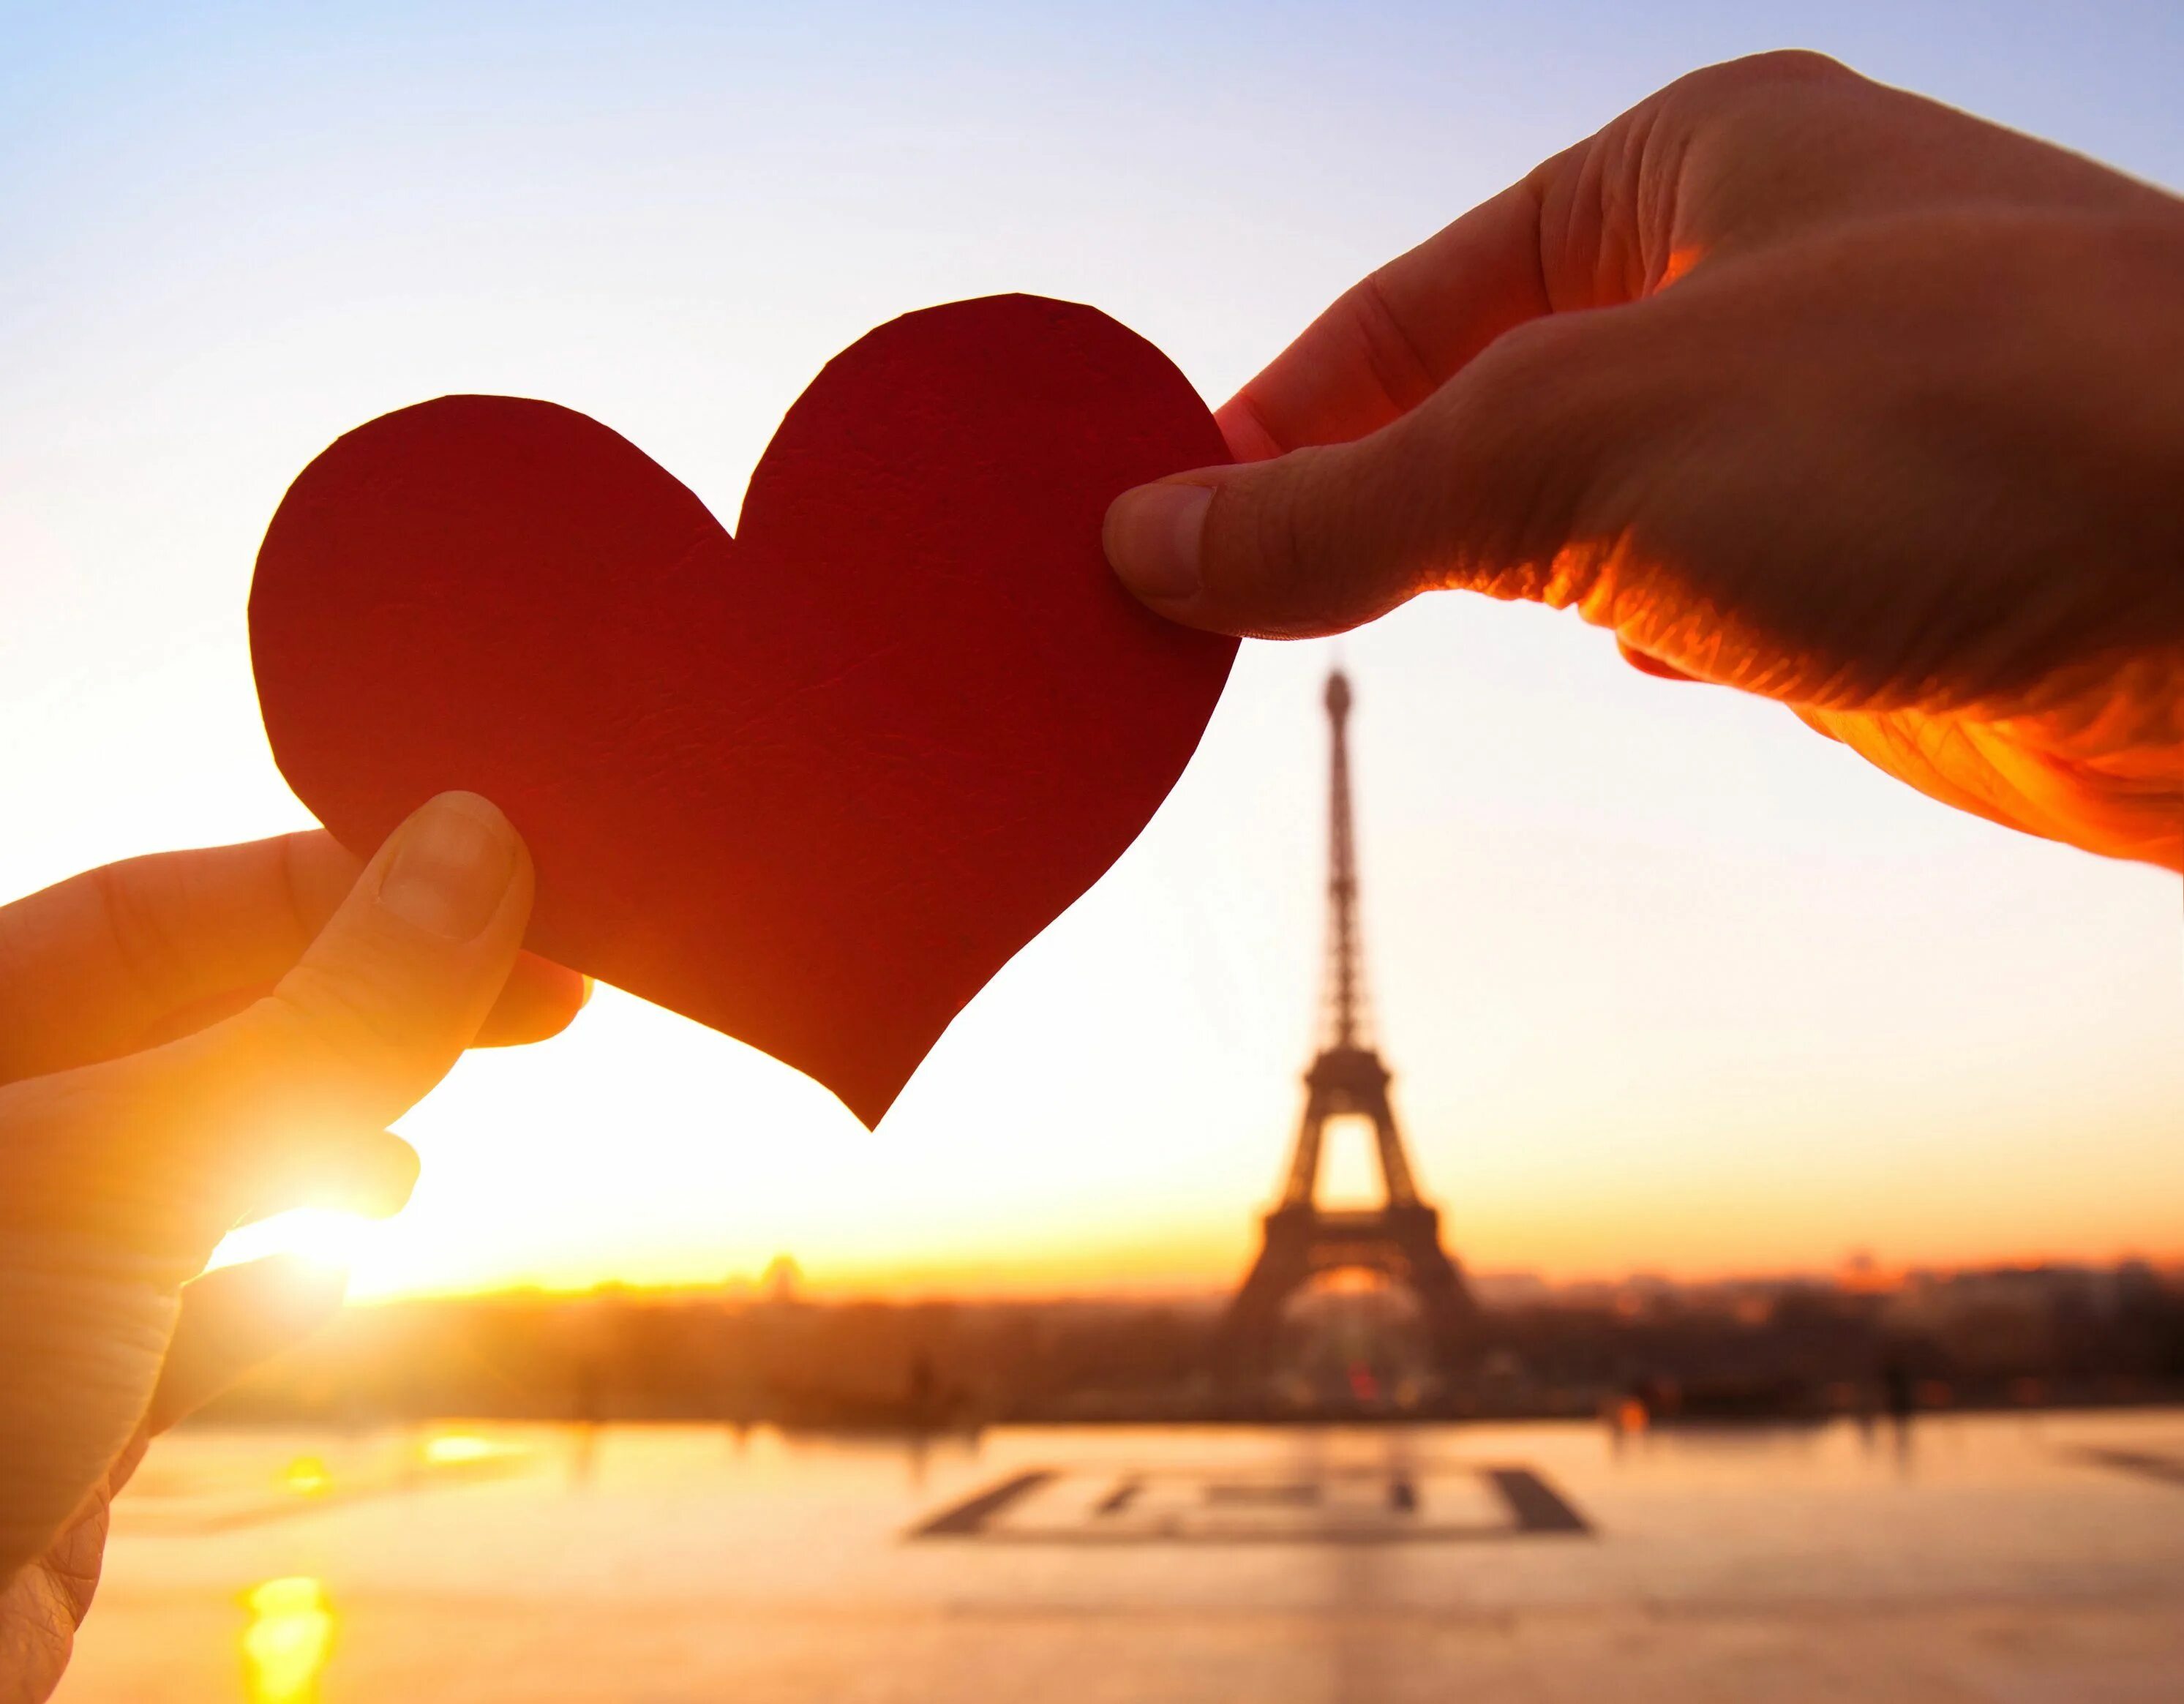 We love two. Романтические сердечки. Влюбленные сердца. День влюбленных во Франции. Сектор любовь и отношения.